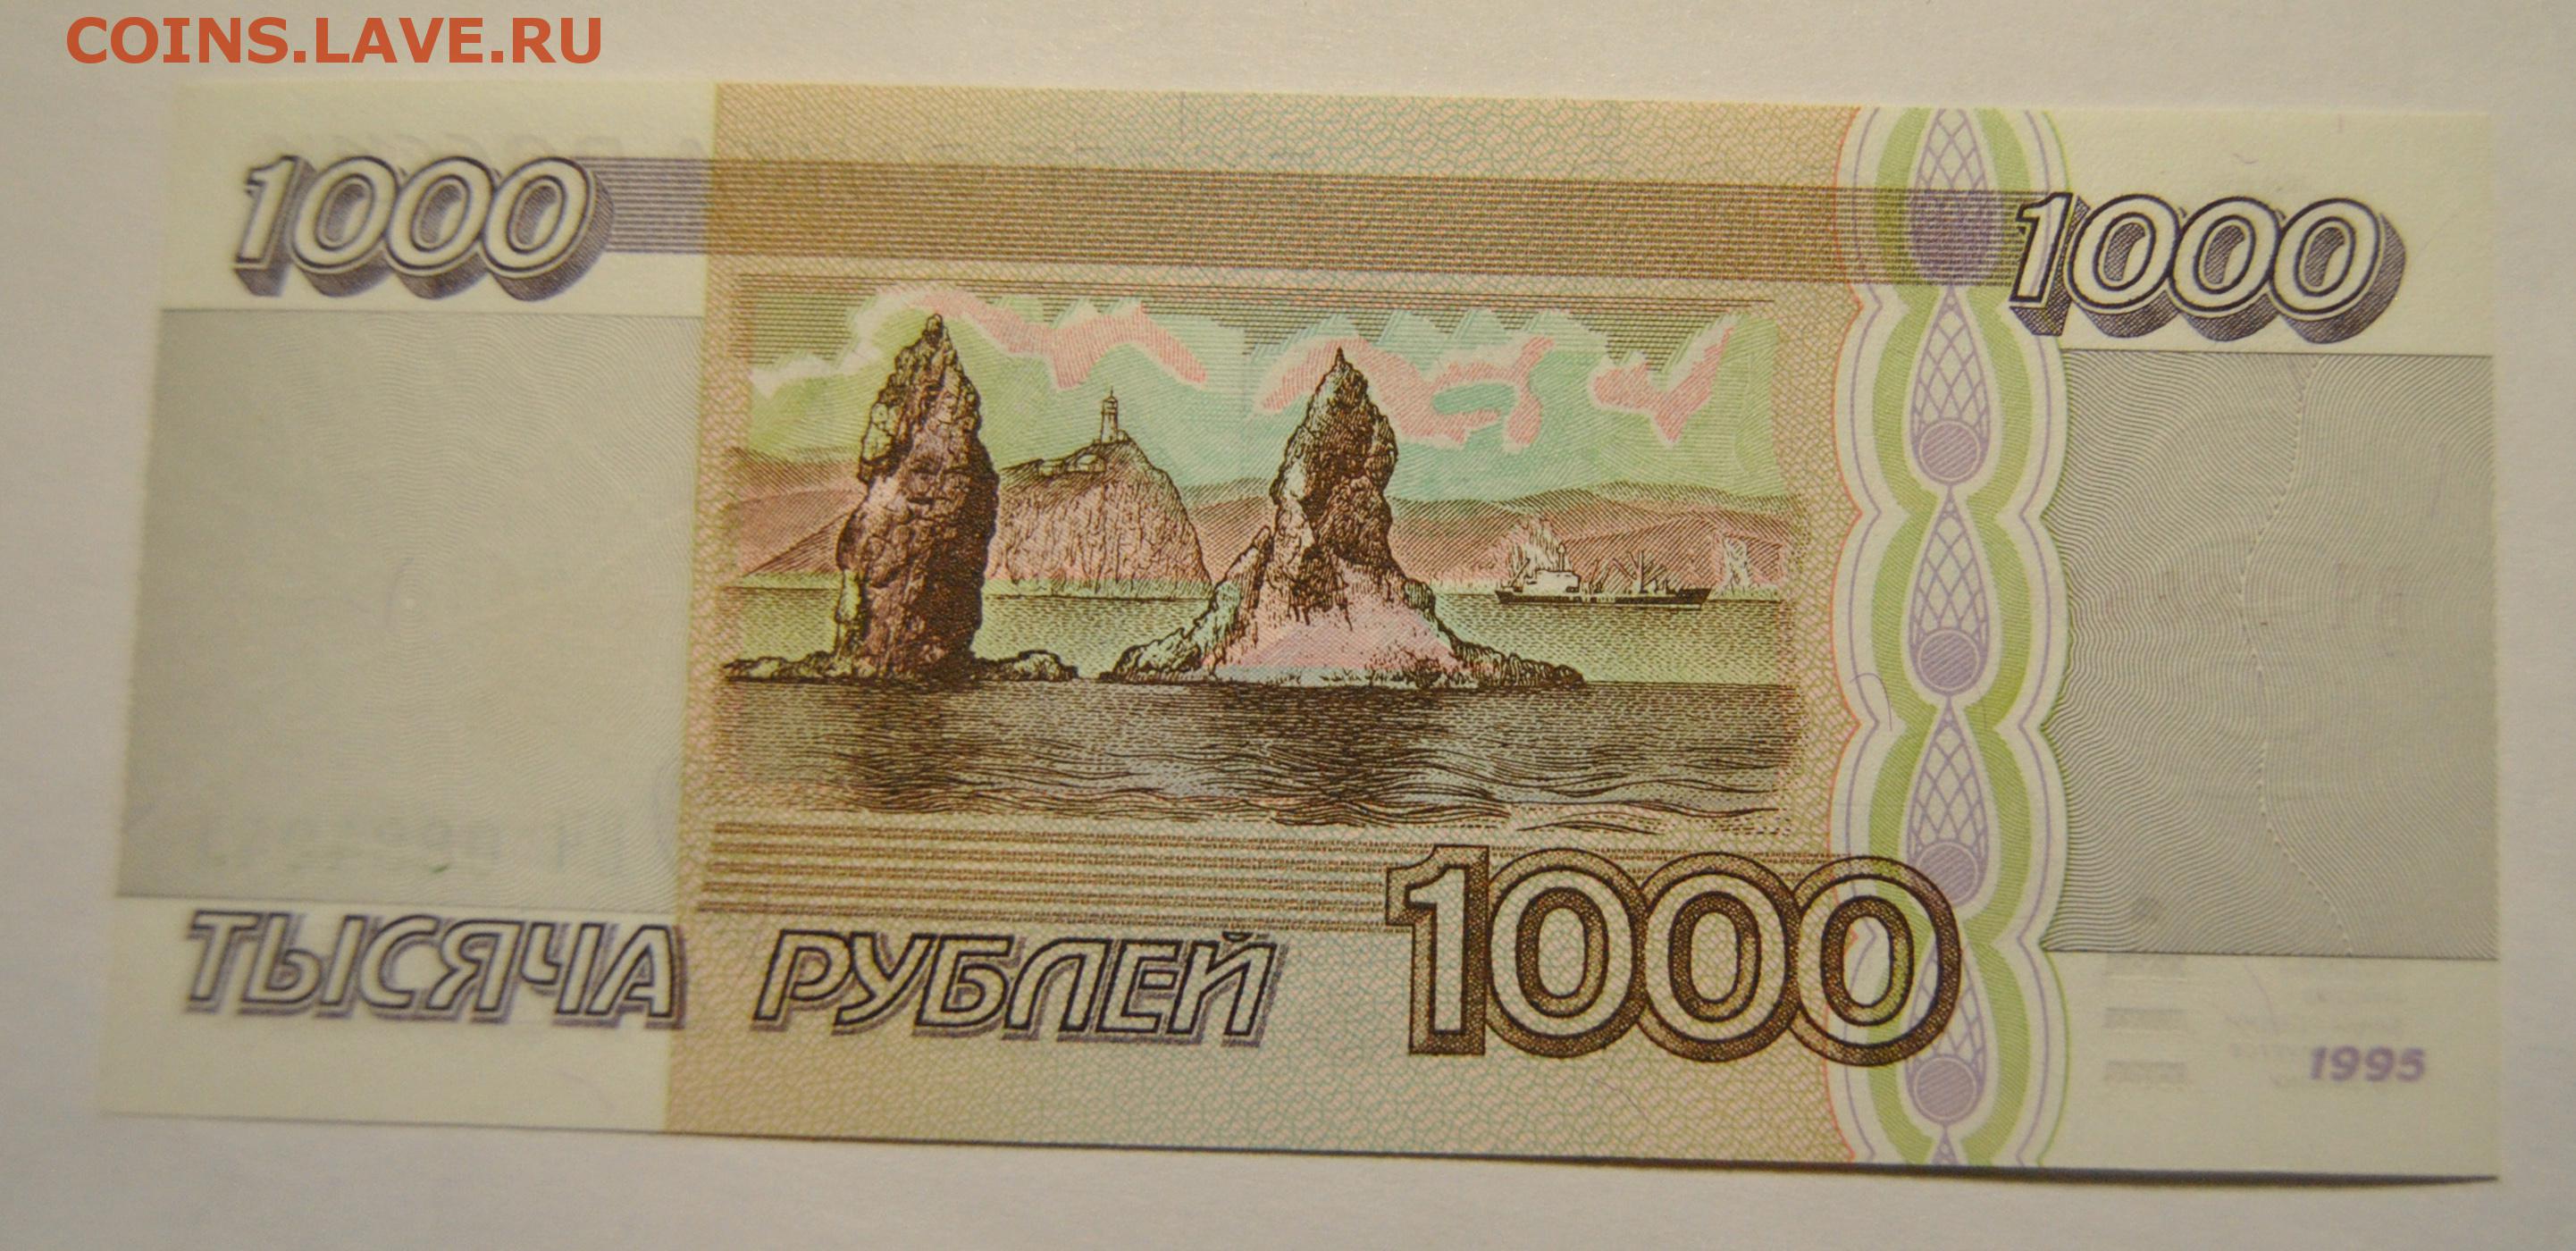 8 т рублей. 1000 Рублей 1995 года. 5 Тысяч рублей 1995 года. 1т рублей. 10 Тысяч рублей 1995.